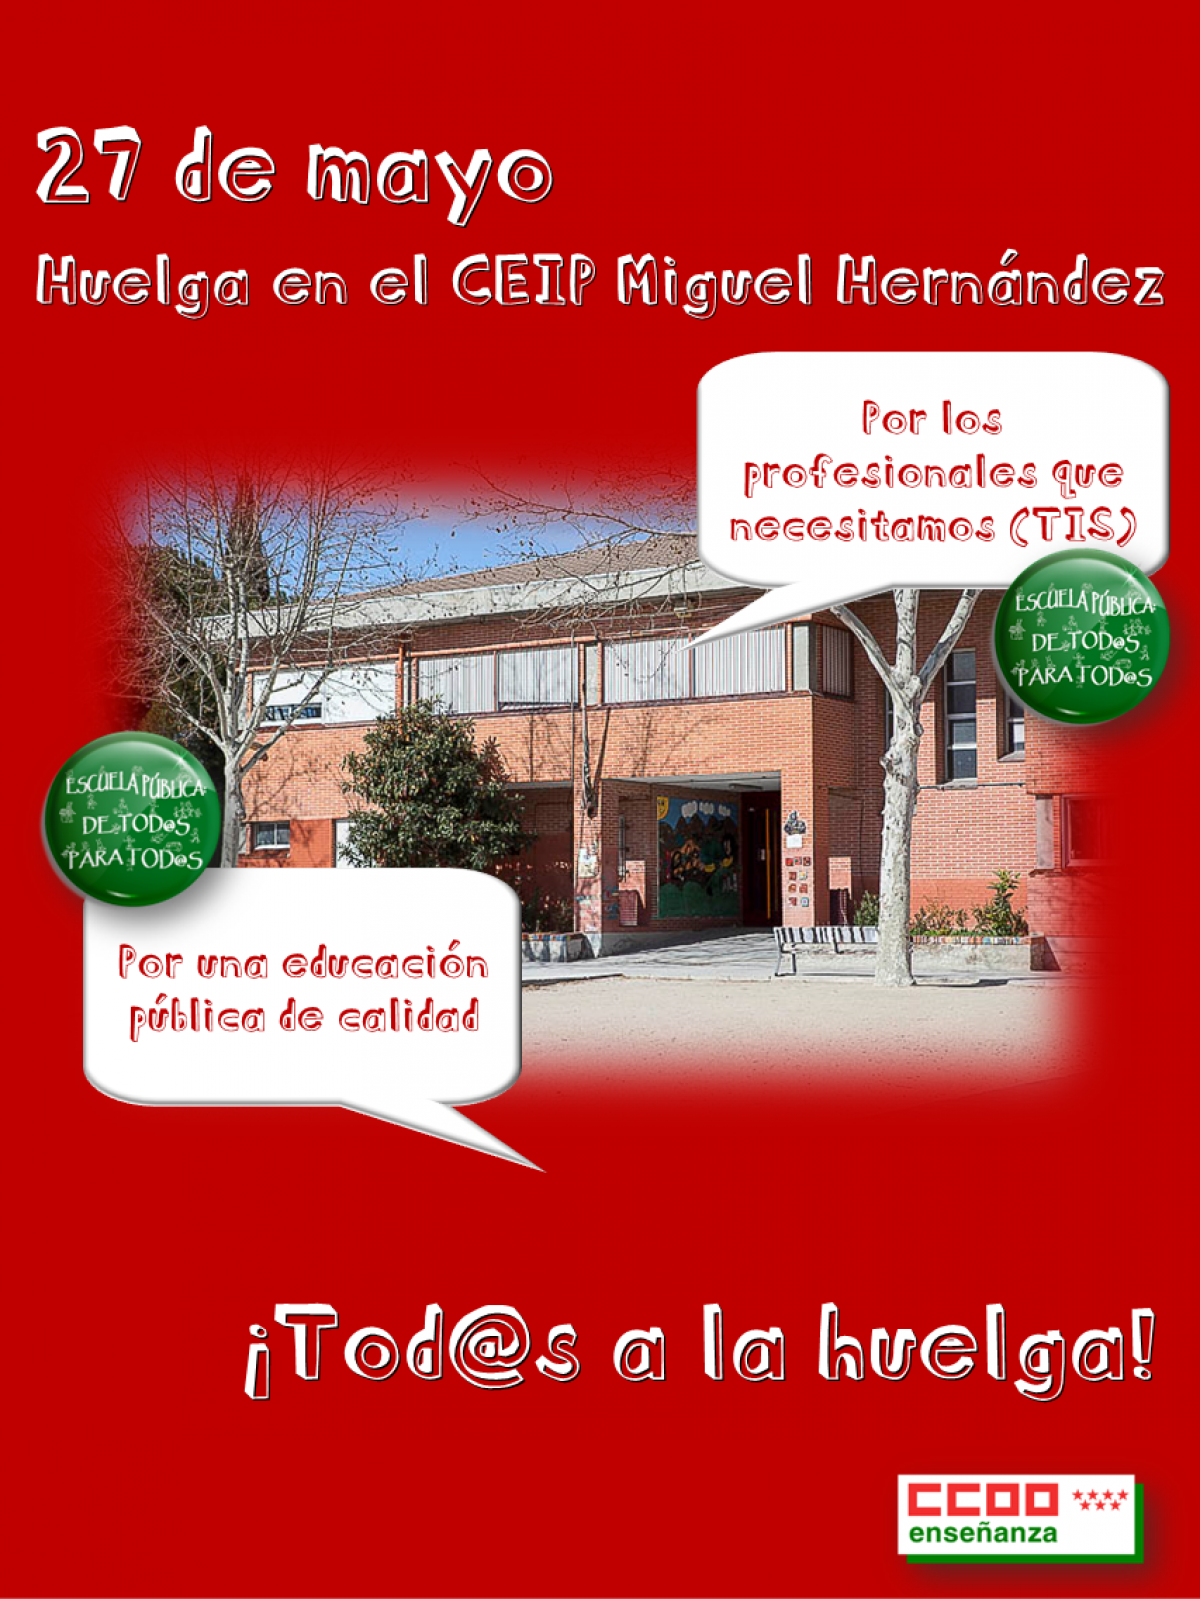 Viernes 27 mayo: huelga CEIP miguel Hernández de Getafe